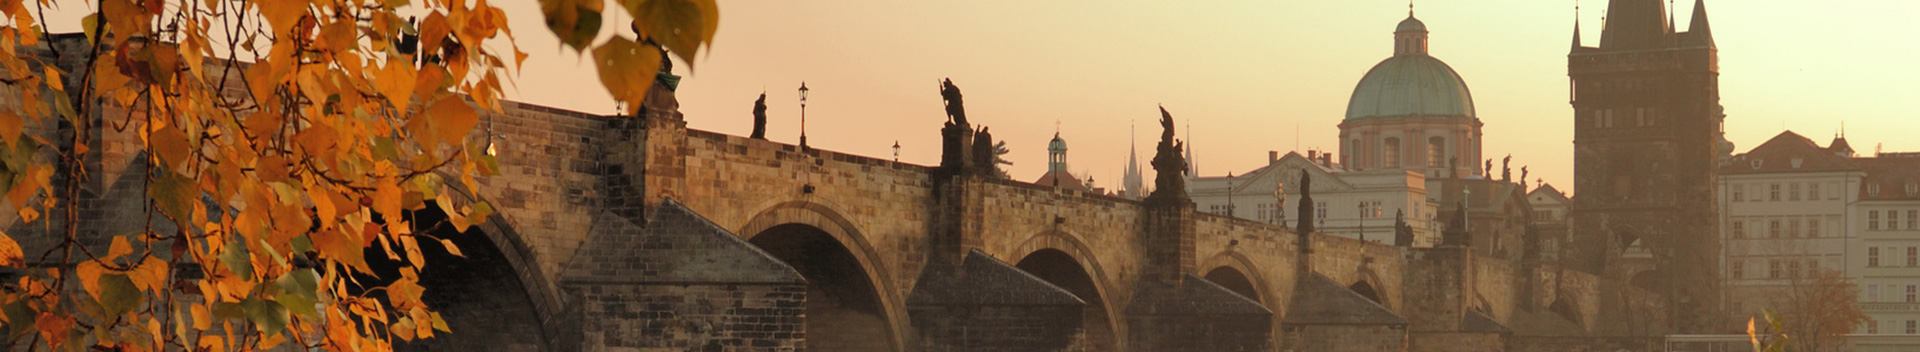 Brno – Olomouc – Moravia – Prague Tours